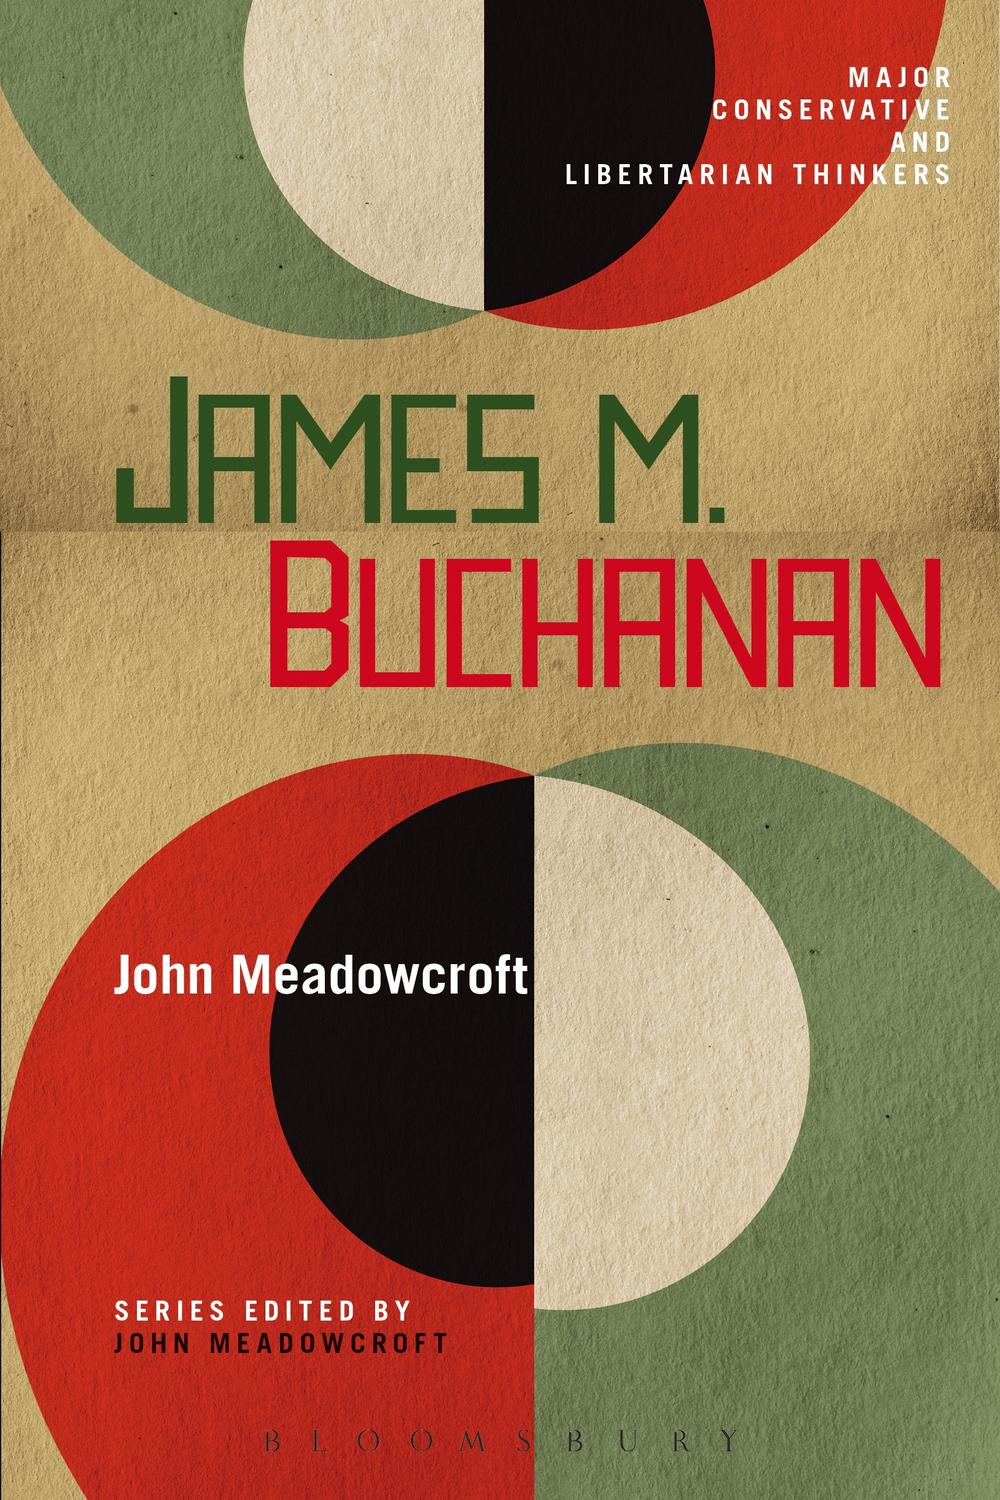 James M. Buchanan - John Meadowcroft